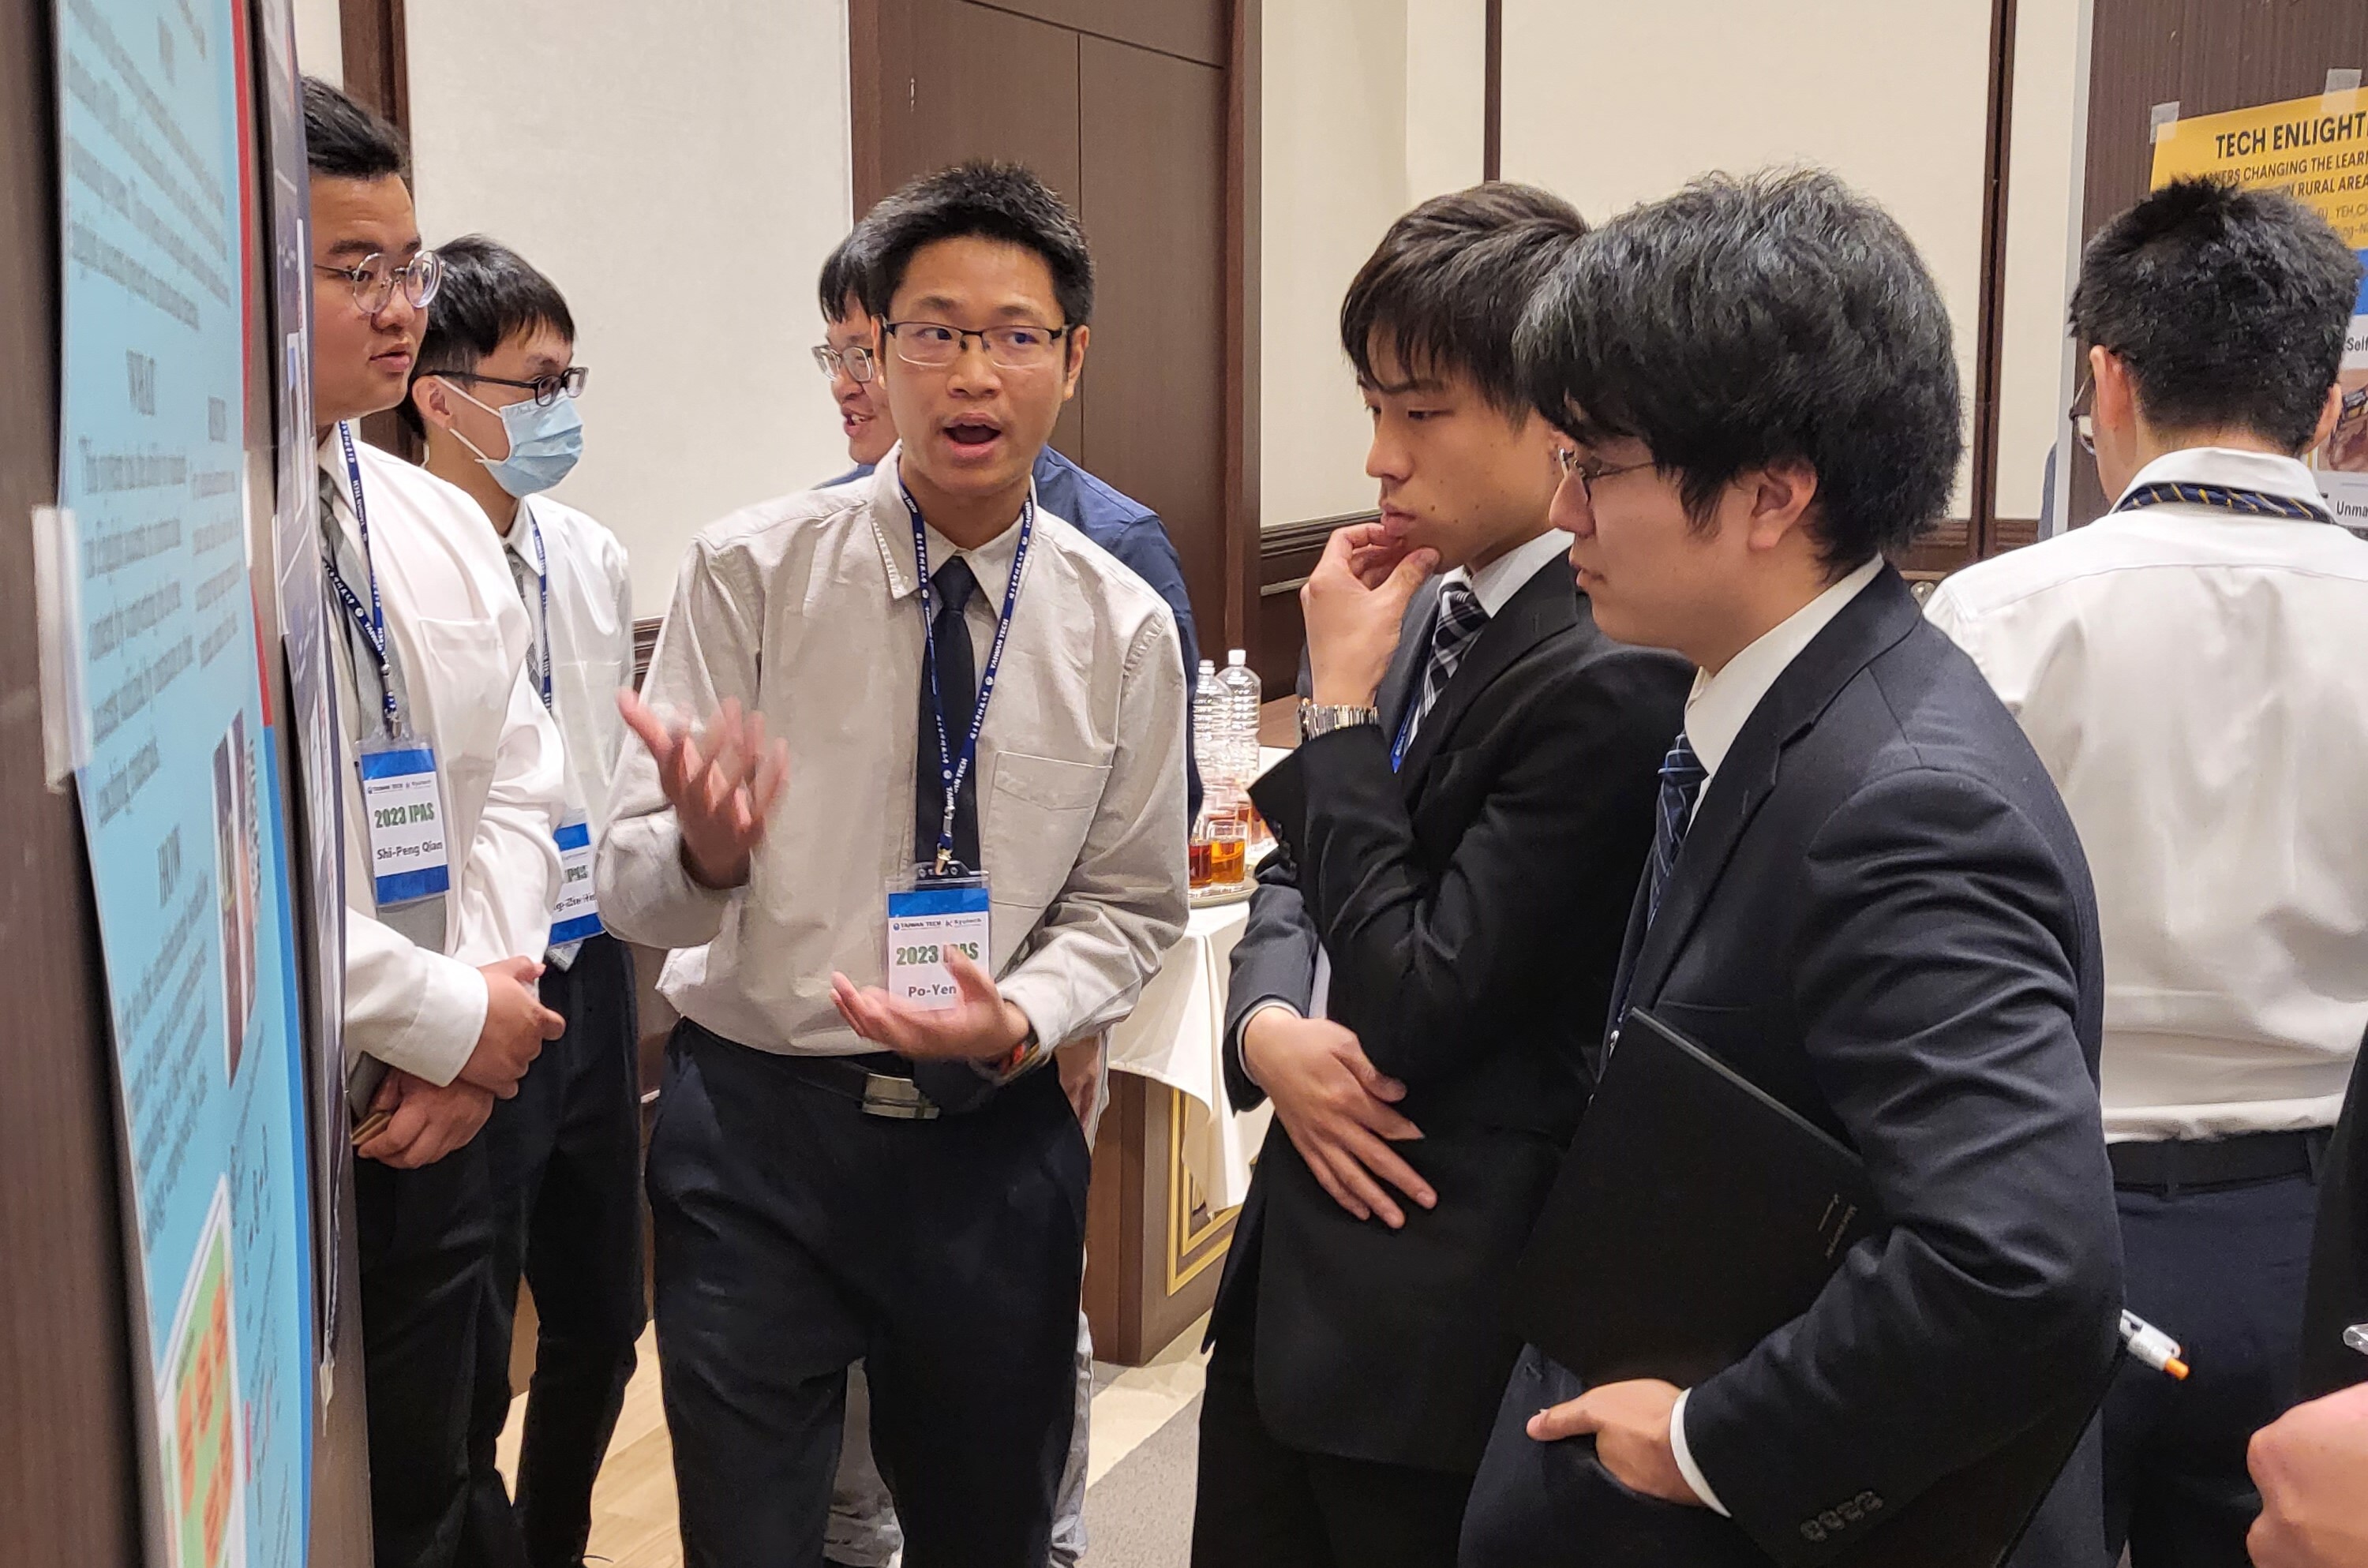 臺科大學生與九州工業大學學生互相介紹研究主題並進行交流互動。